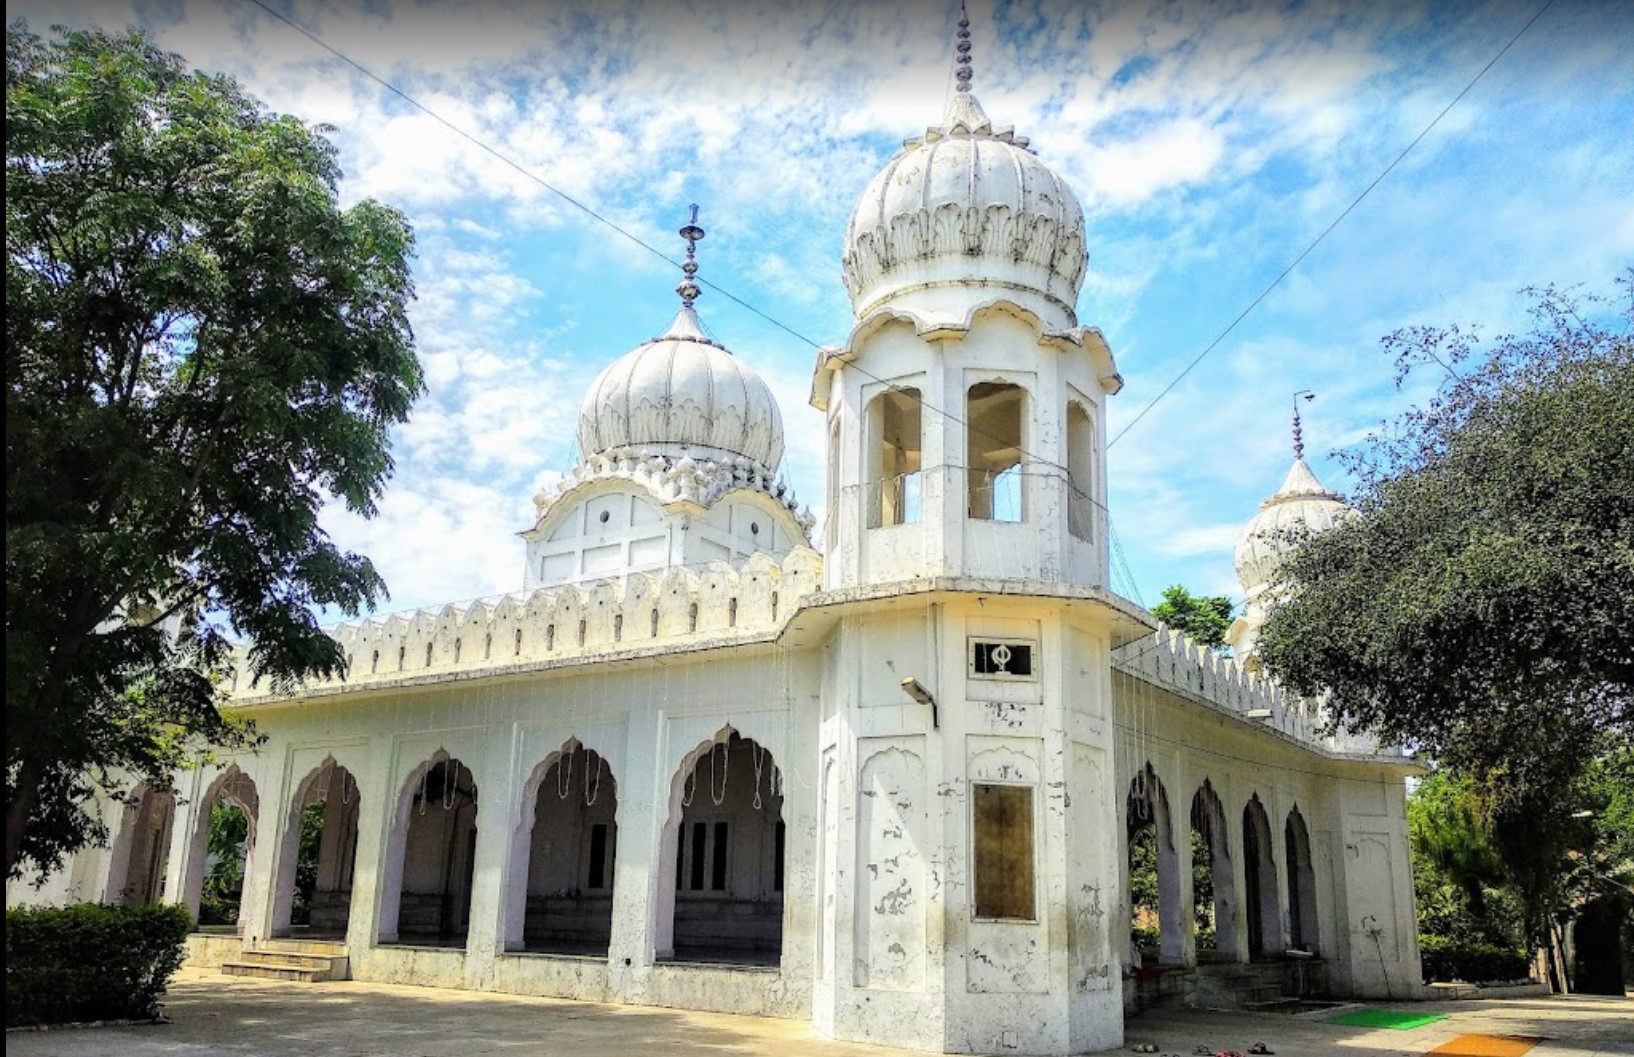 Gurdwara Qila Fatehgarh Sahib